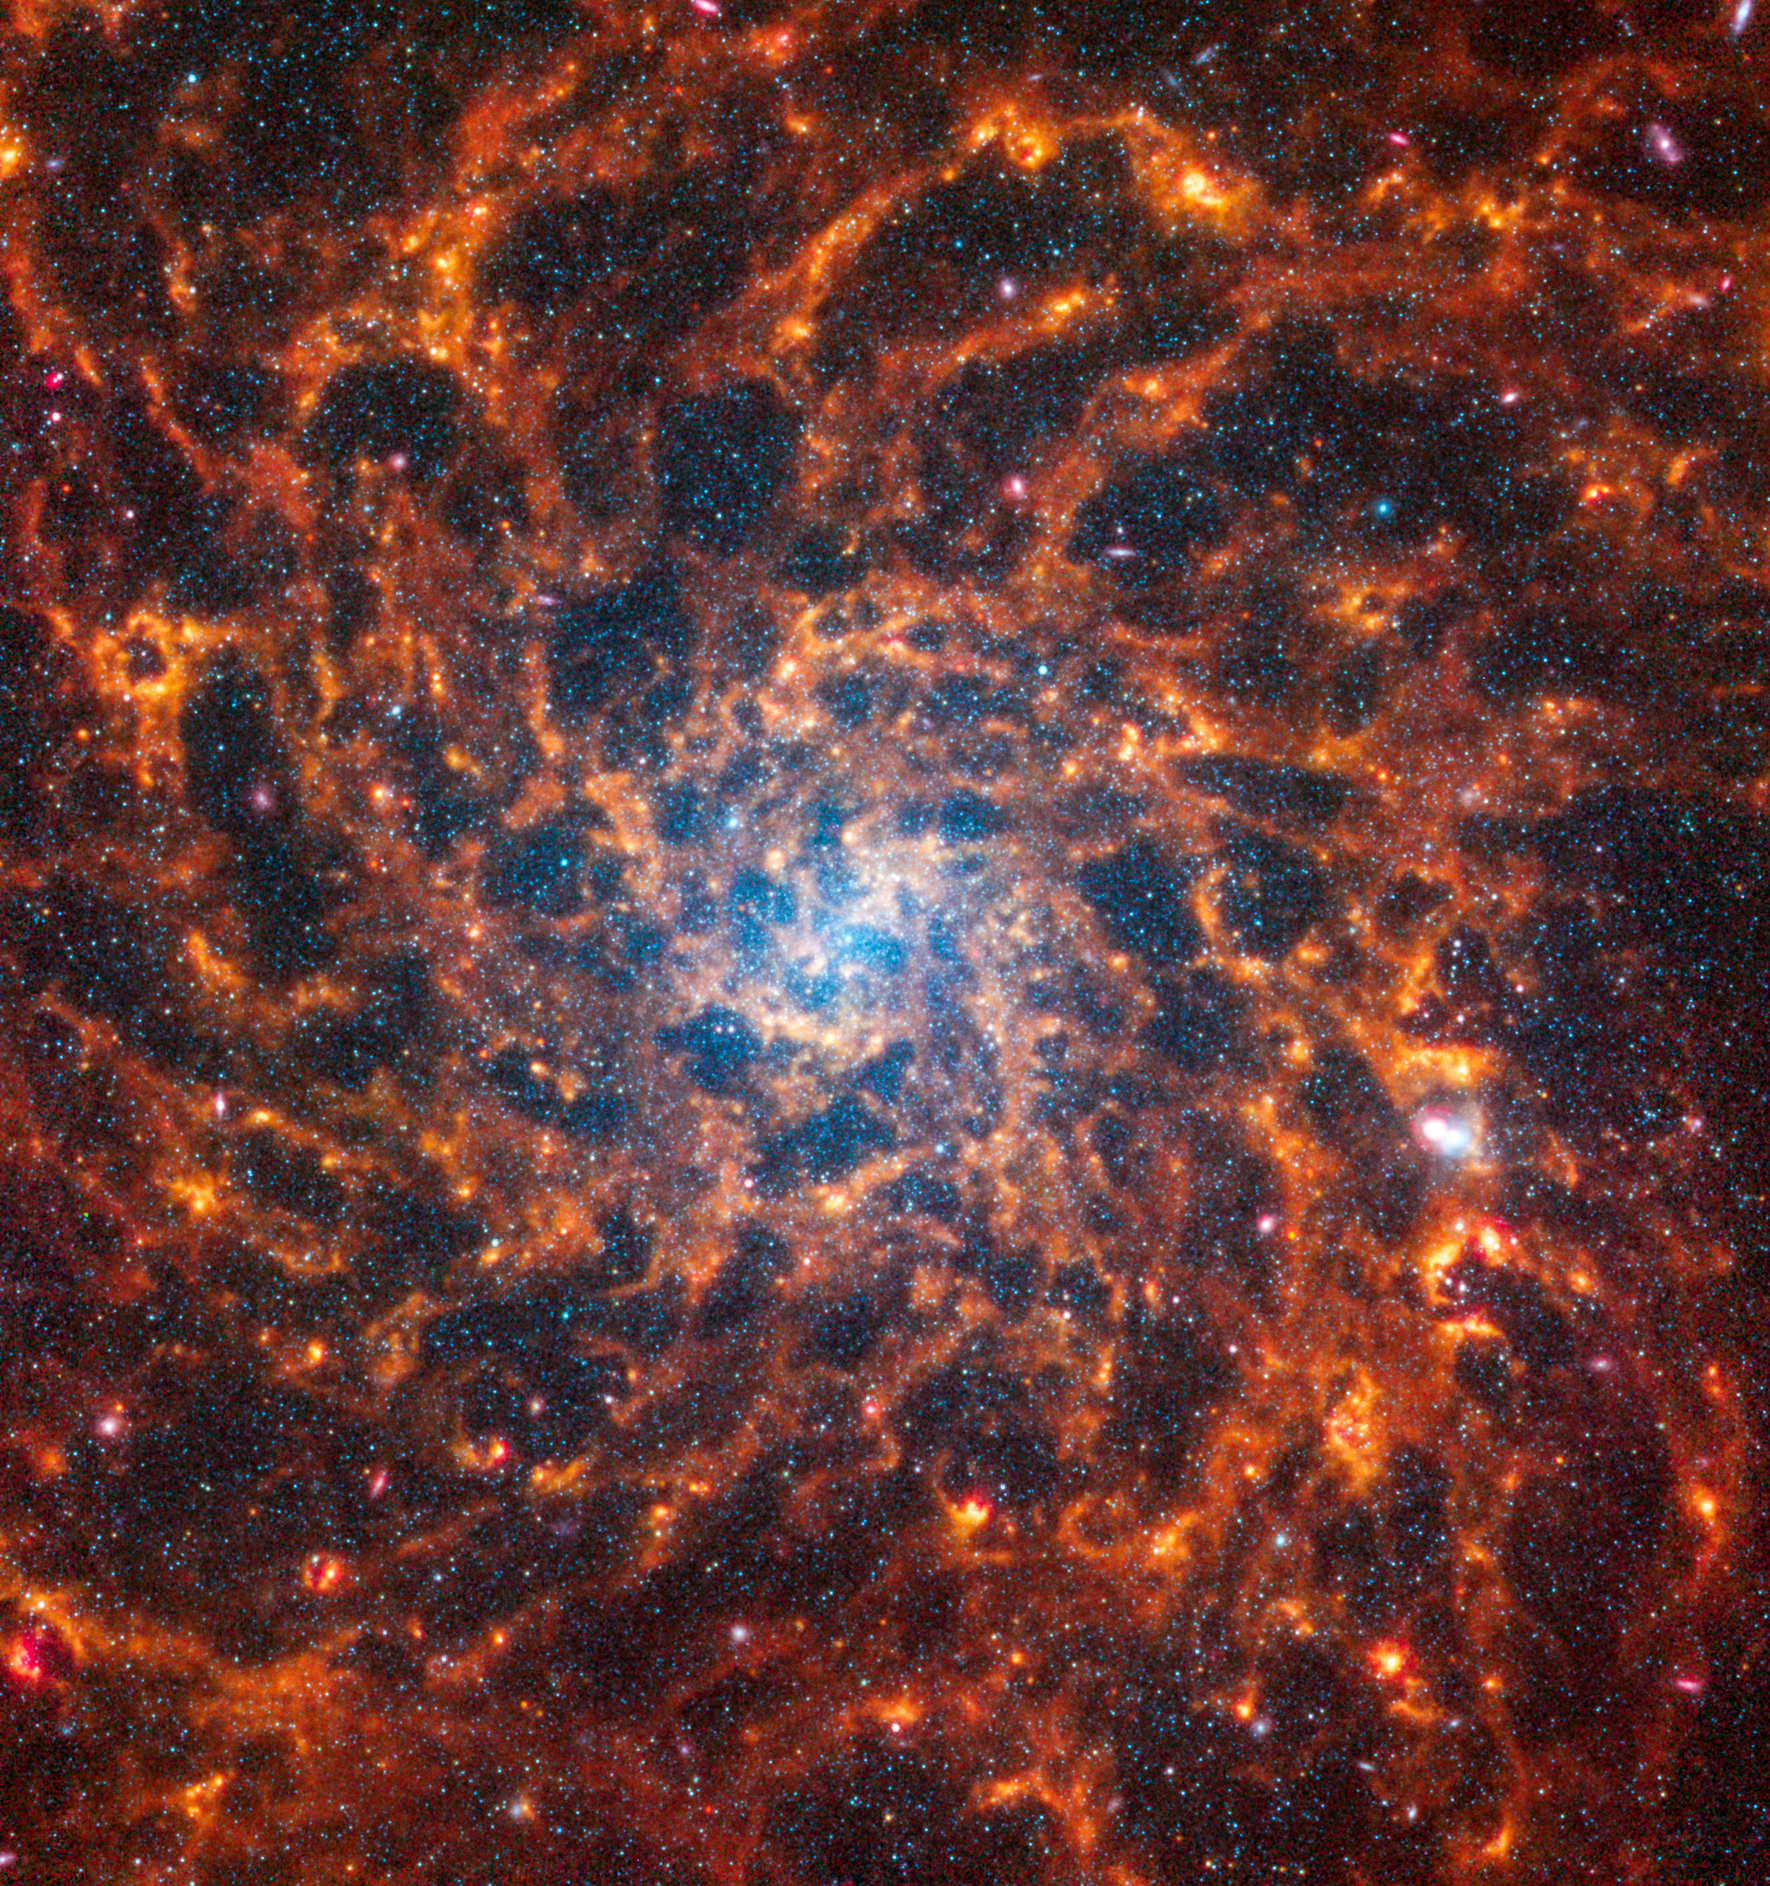 La galassia a spirale frontale, IC 5332, è divisa diagonalmente in questa immagine: le osservazioni del telescopio spaziale James Webb appaiono in alto a sinistra e quelle del telescopio spaziale Hubble in basso a destra. Le immagini di Webb e Hubble mostrano un contrasto sorprendente, un’inversione di oscurità e luce. Perché? Le osservazioni di Webb combinano la luce nel vicino e medio infrarosso e la luce visibile e ultravioletta di Hubble. La polvere assorbe la luce ultravioletta e visibile, quindi la riemette nell'infrarosso. Nelle immagini di Webb vediamo la polvere brillare nella luce infrarossa. Nelle immagini di Hubble, le regioni scure sono i luoghi in cui la luce delle stelle viene assorbita dalla polvere.